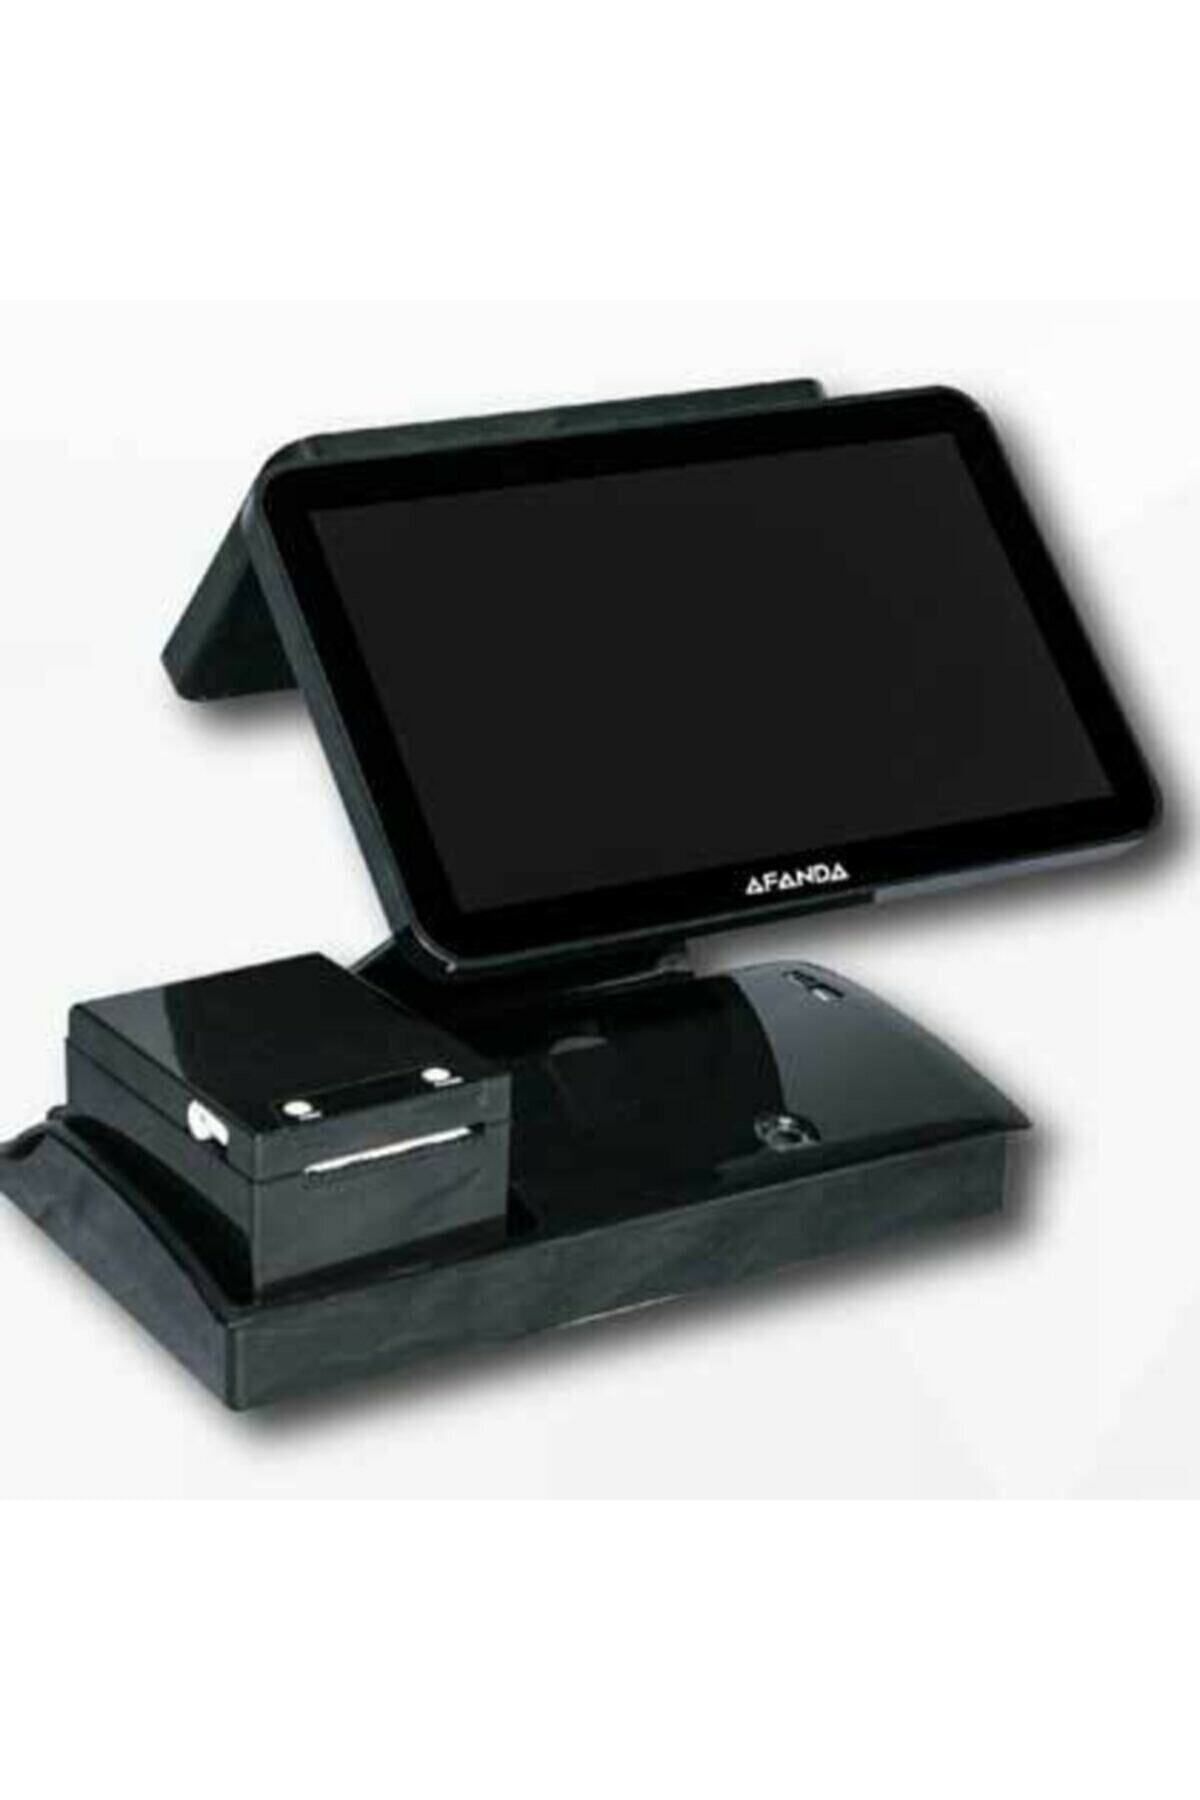 AFANDA Gl-1520 J1900 15.6x12 Inc Çift Ekranlı 80mm Yazıcılı Dokunmatik Pos Terminal